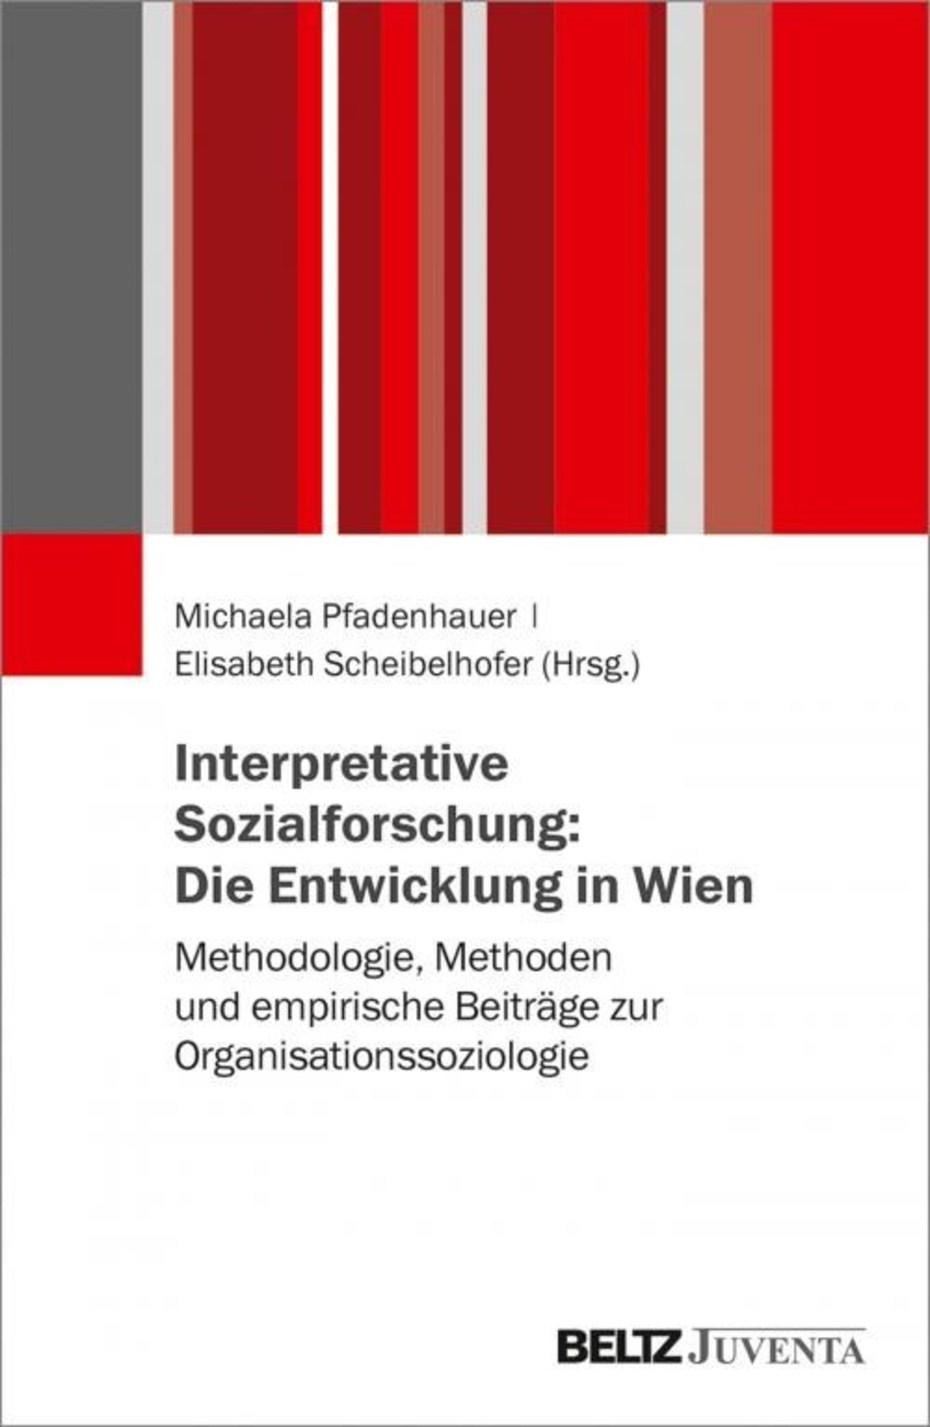 Interpretative Sozial- und Organisationsforschung (Cover)